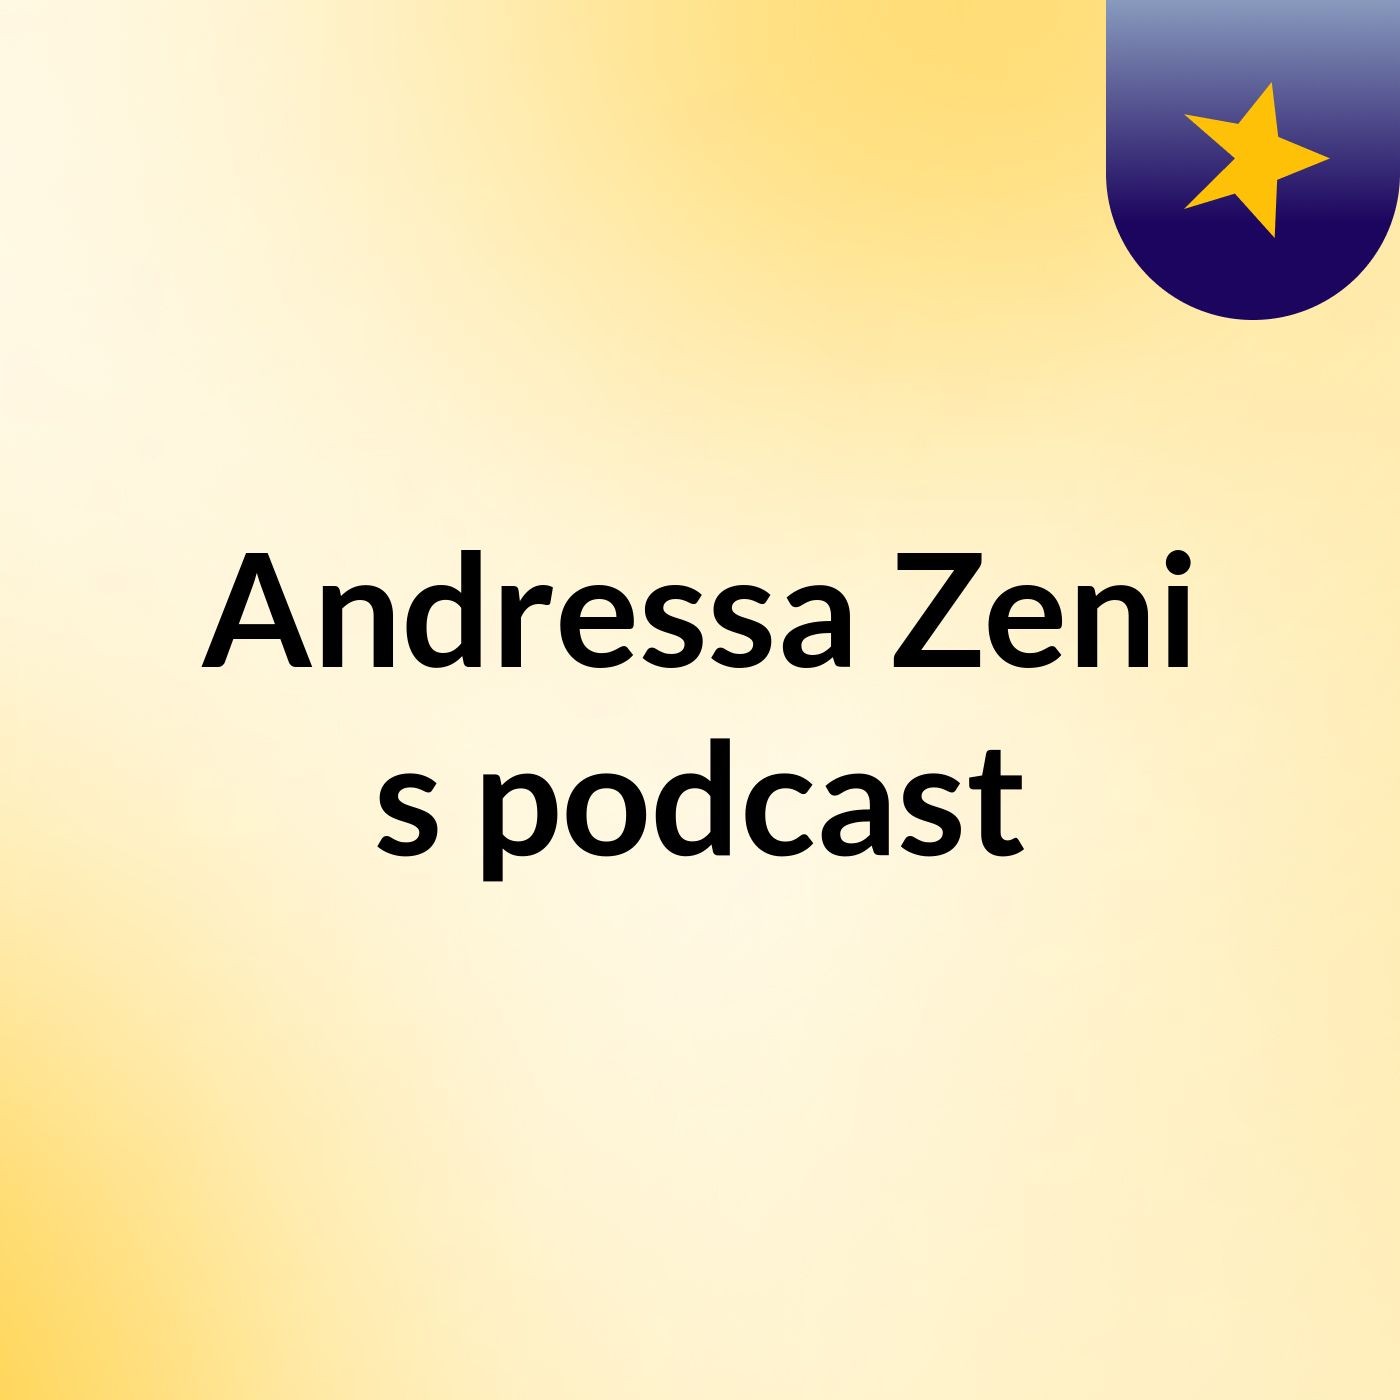 Andressa Zeni's podcast